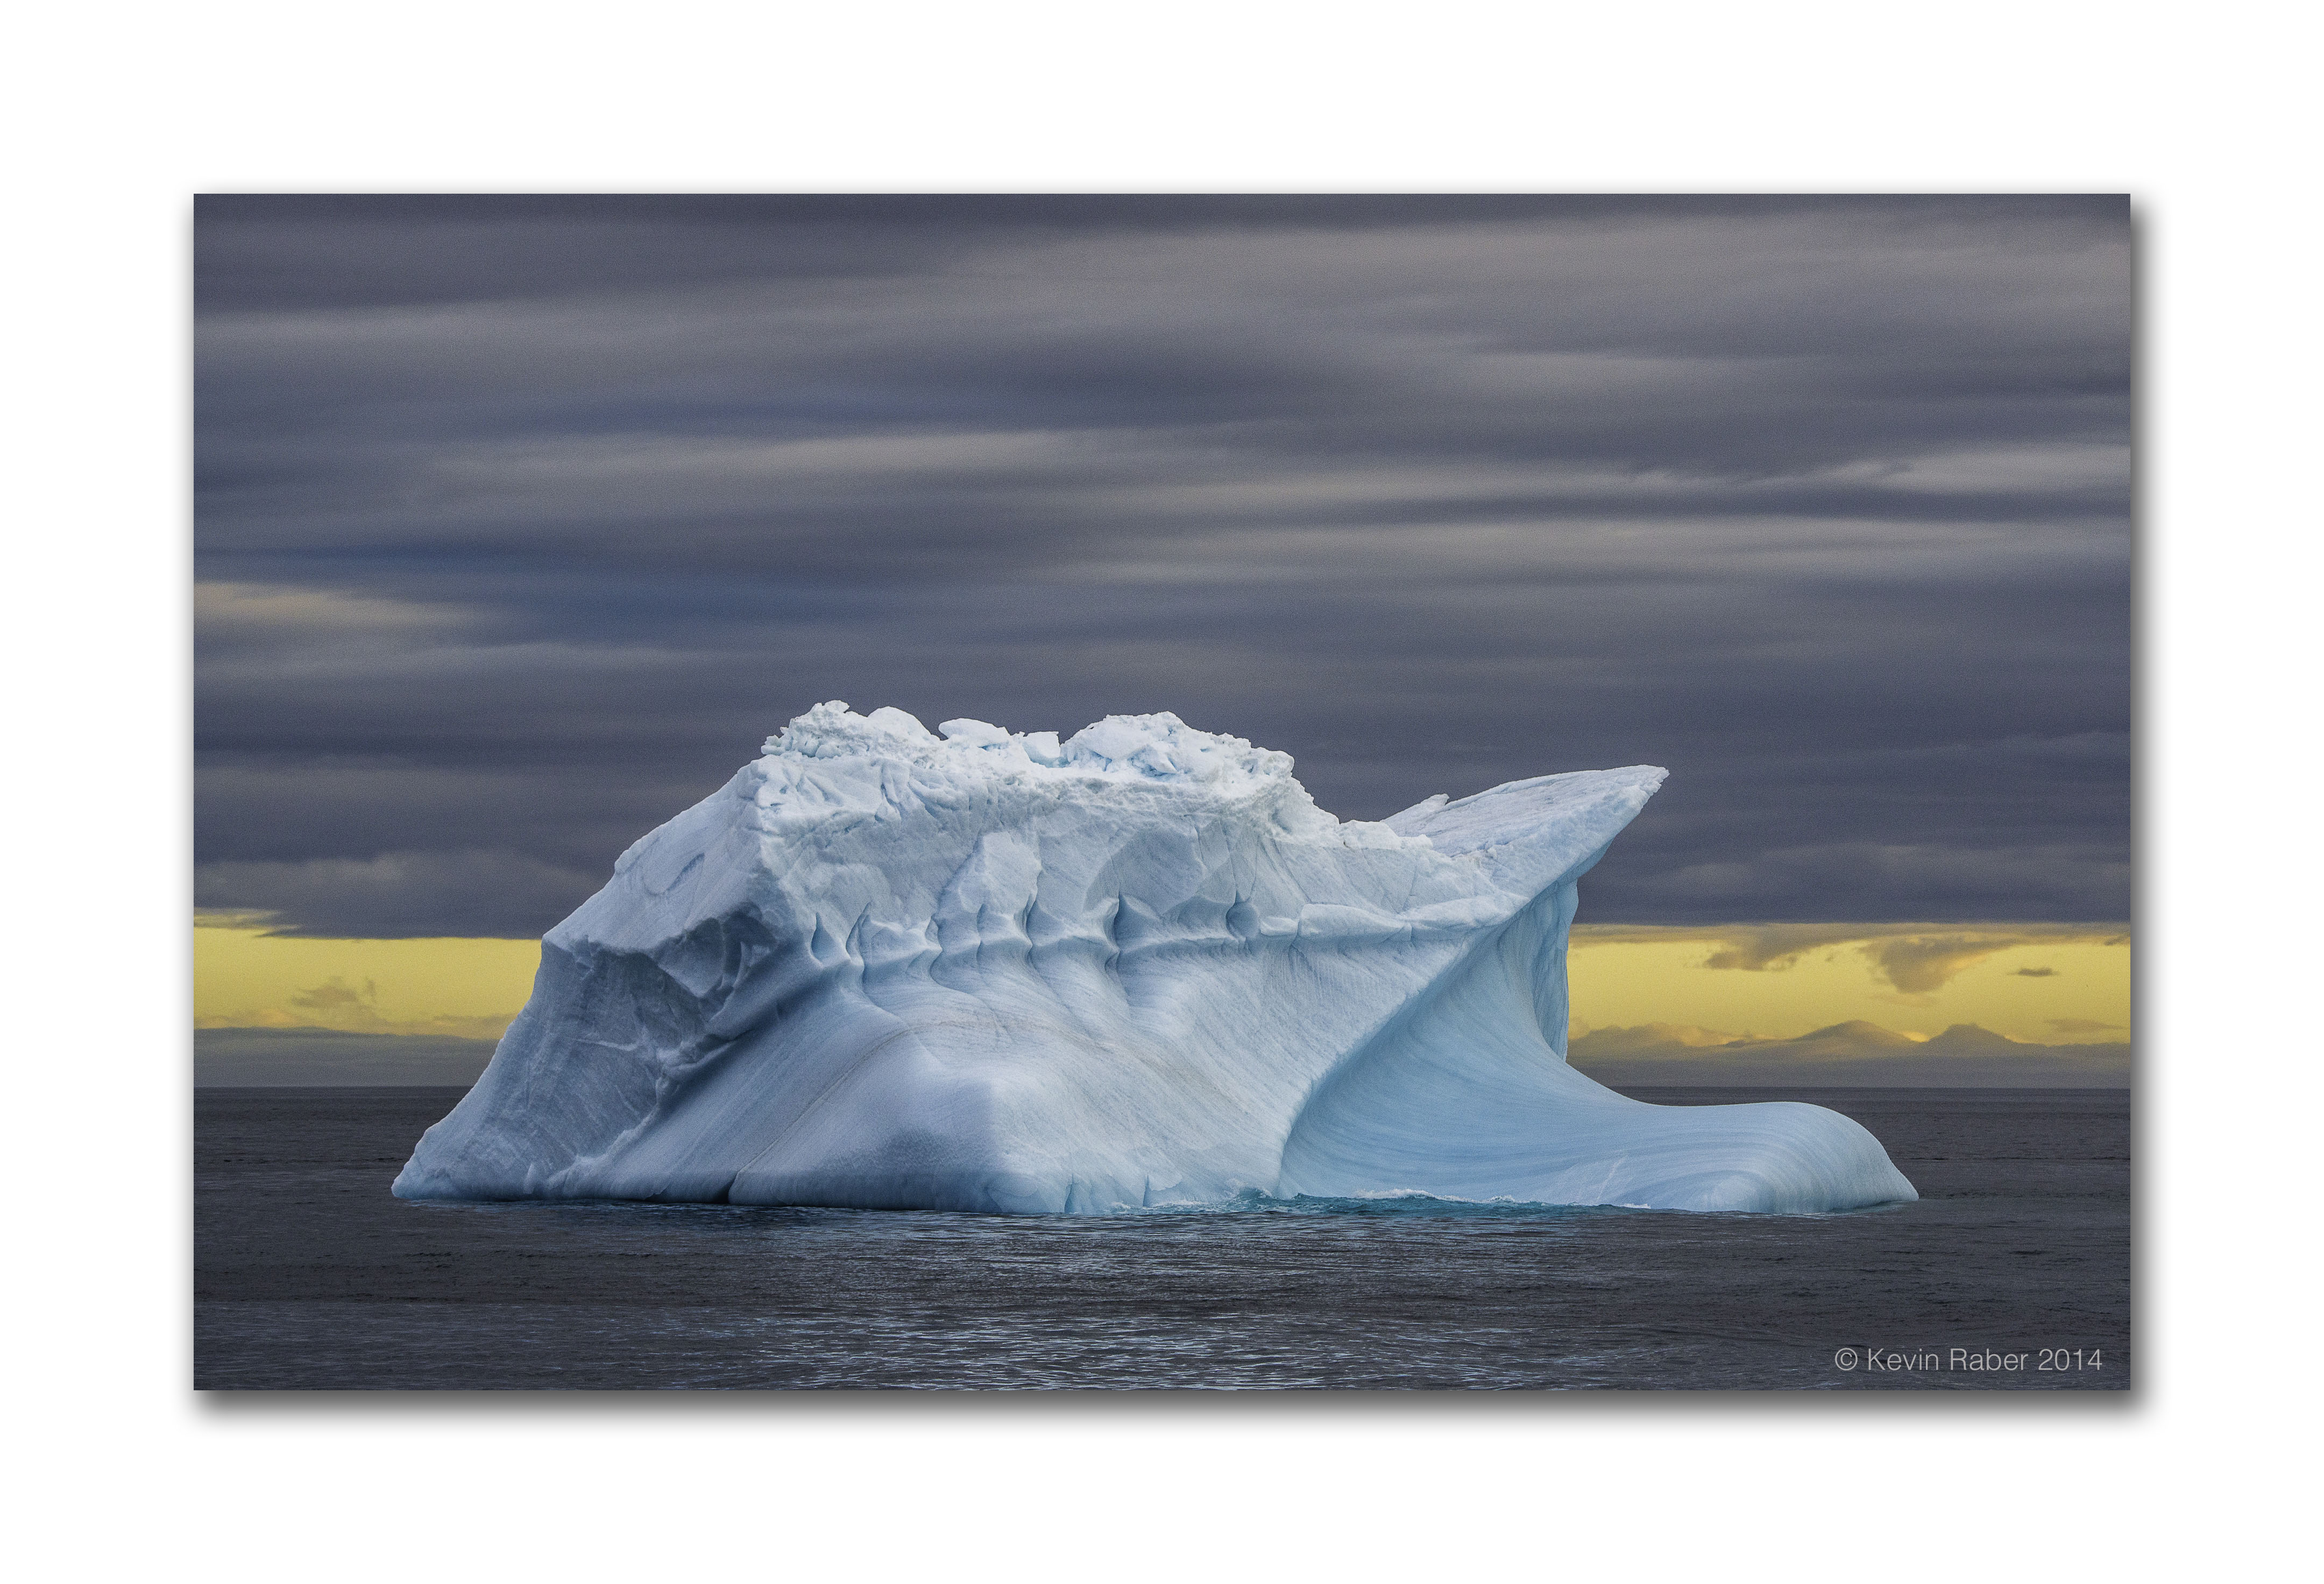 Beautiful Iceberg, 24 hours of light, Svalbard, Norway